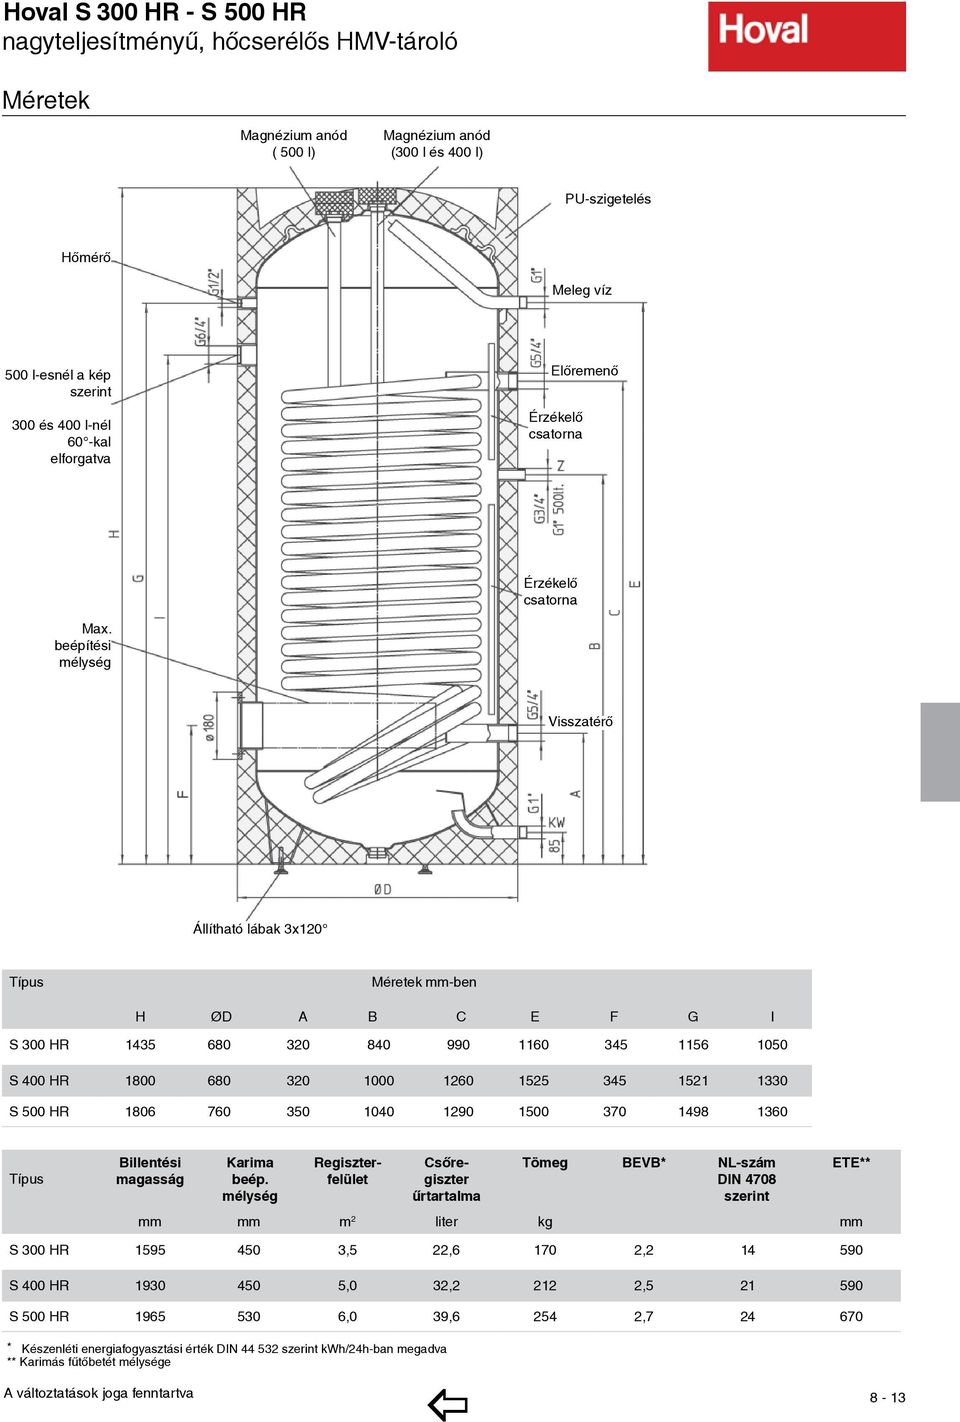 Hoval S , egy hőcserélős HMV-tároló. Hoval S S, két hőcserélős HMV-tároló.  Hoval S H, nagyteljesítményű HMV-tároló - PDF Free Download